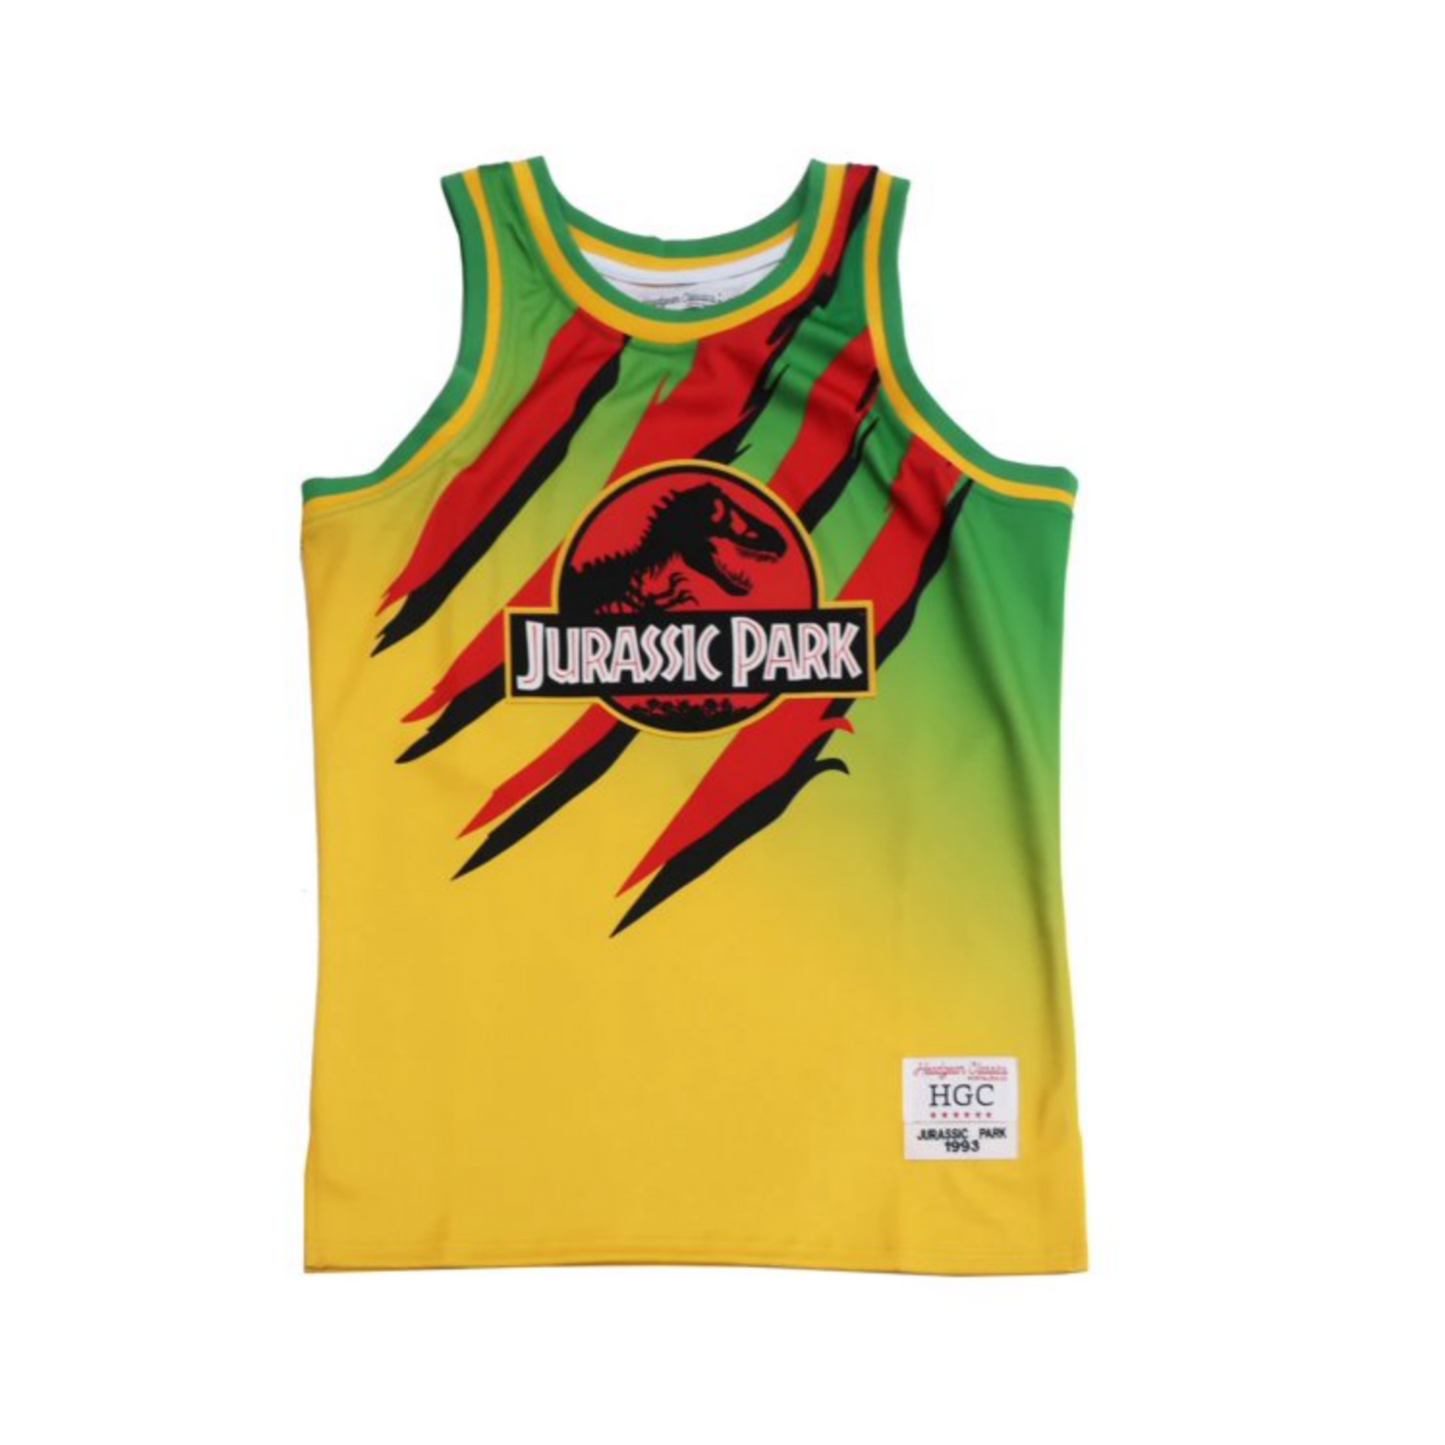 Jurassic Park Truck Men's Headgear Classics Embroidered Basketball Jersey - YellowGreen